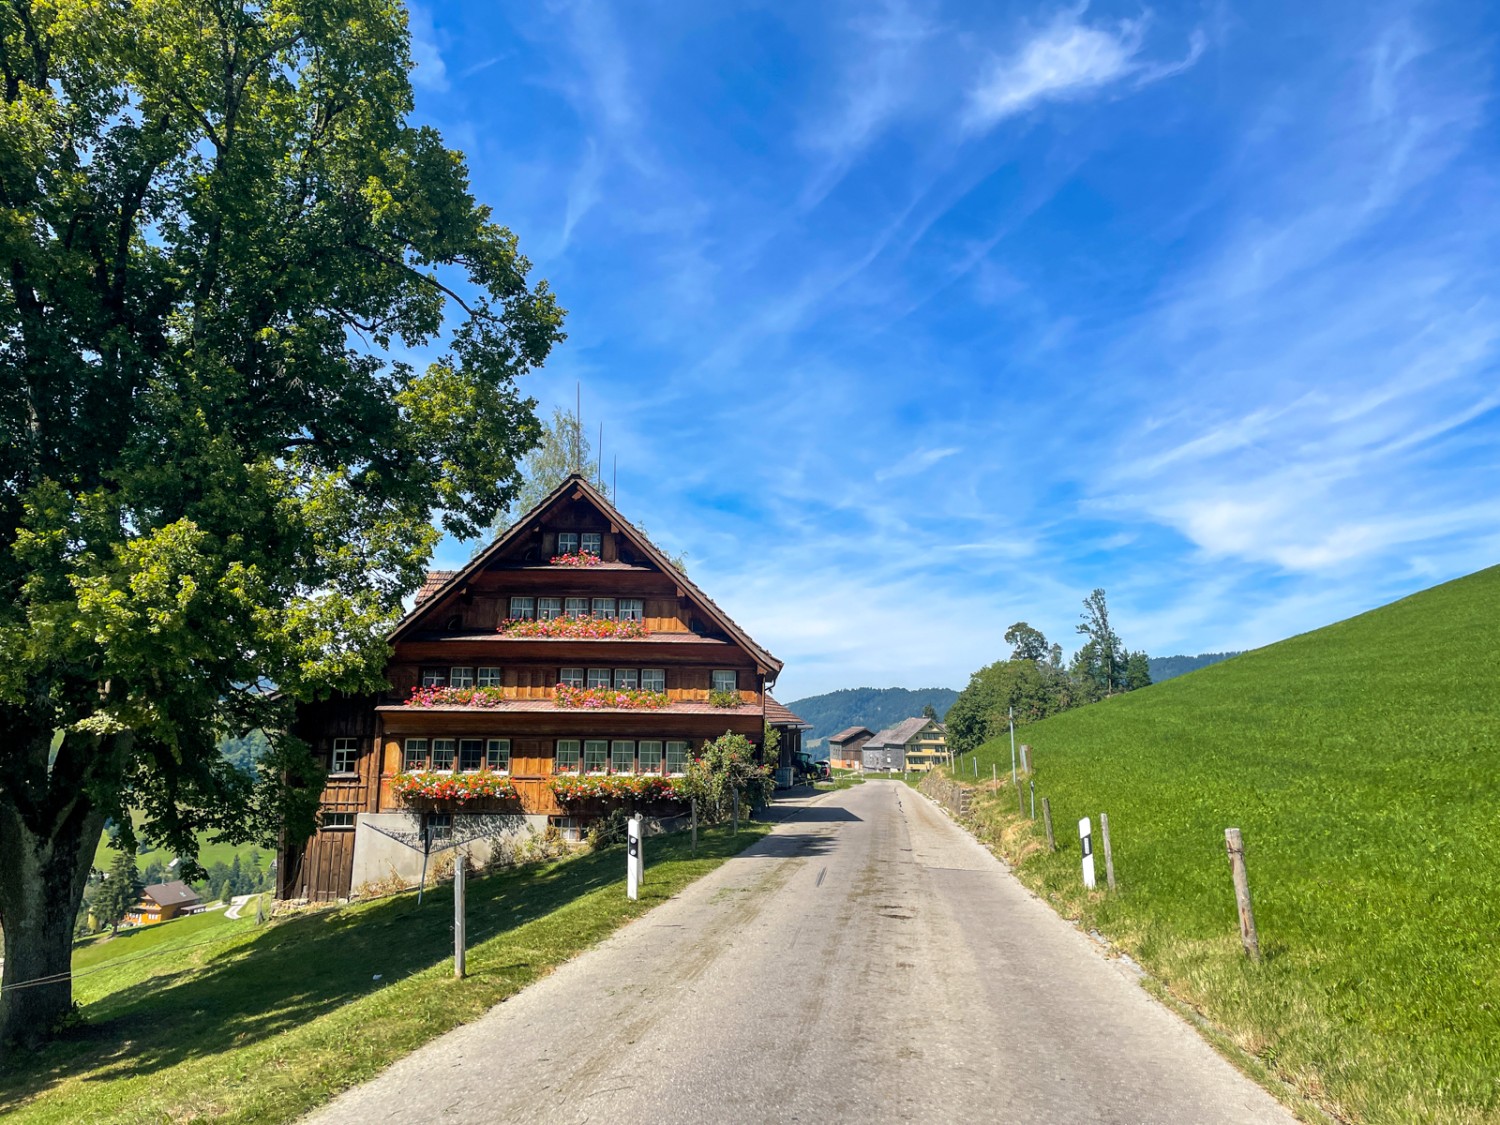 Prächtige Bauernhäuser, üppige Obstbäume und ruhige Landstrassen: Idylle im Appenzellerland. Bild: Claudia Peter